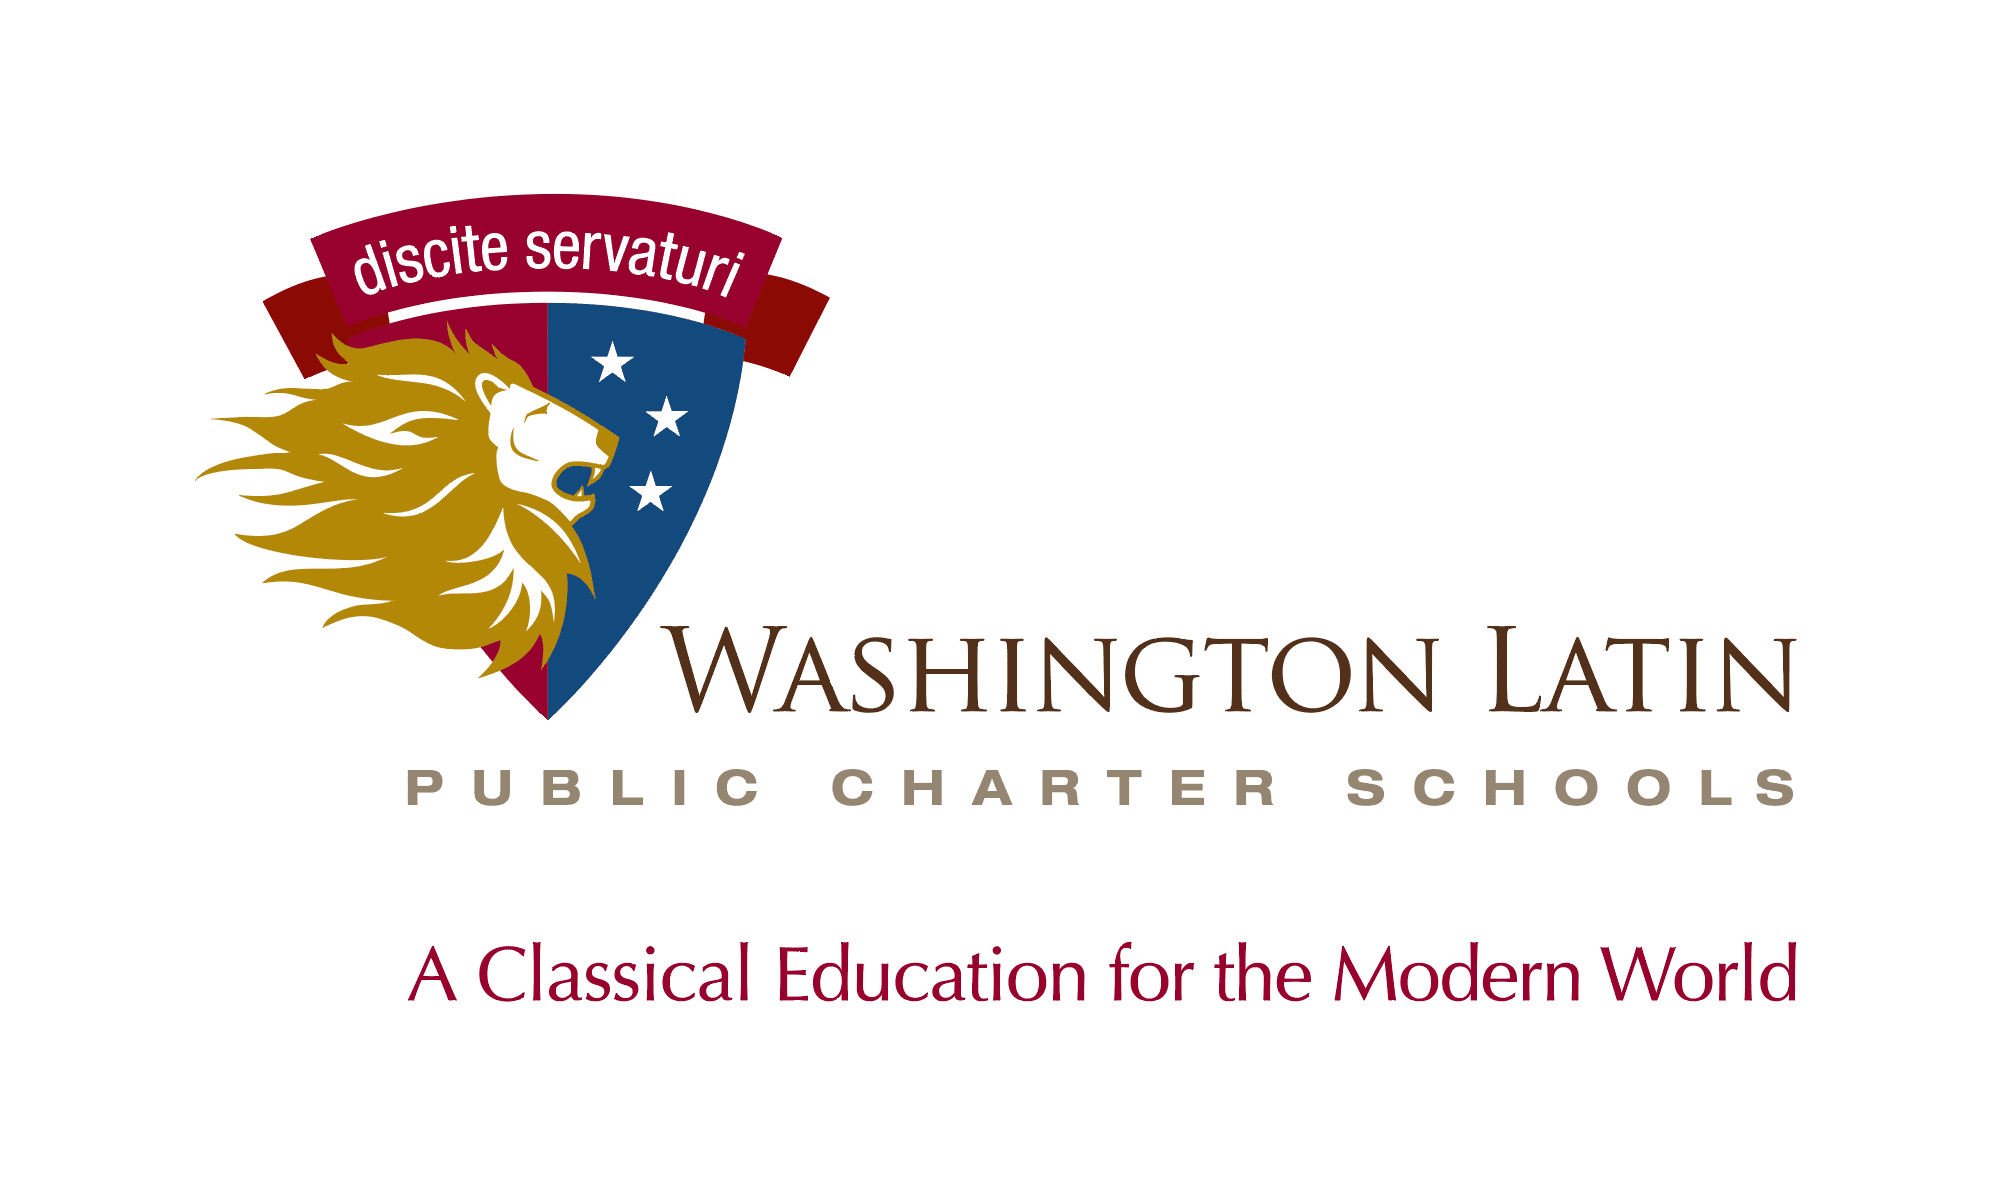 A logo of washington law public charter school